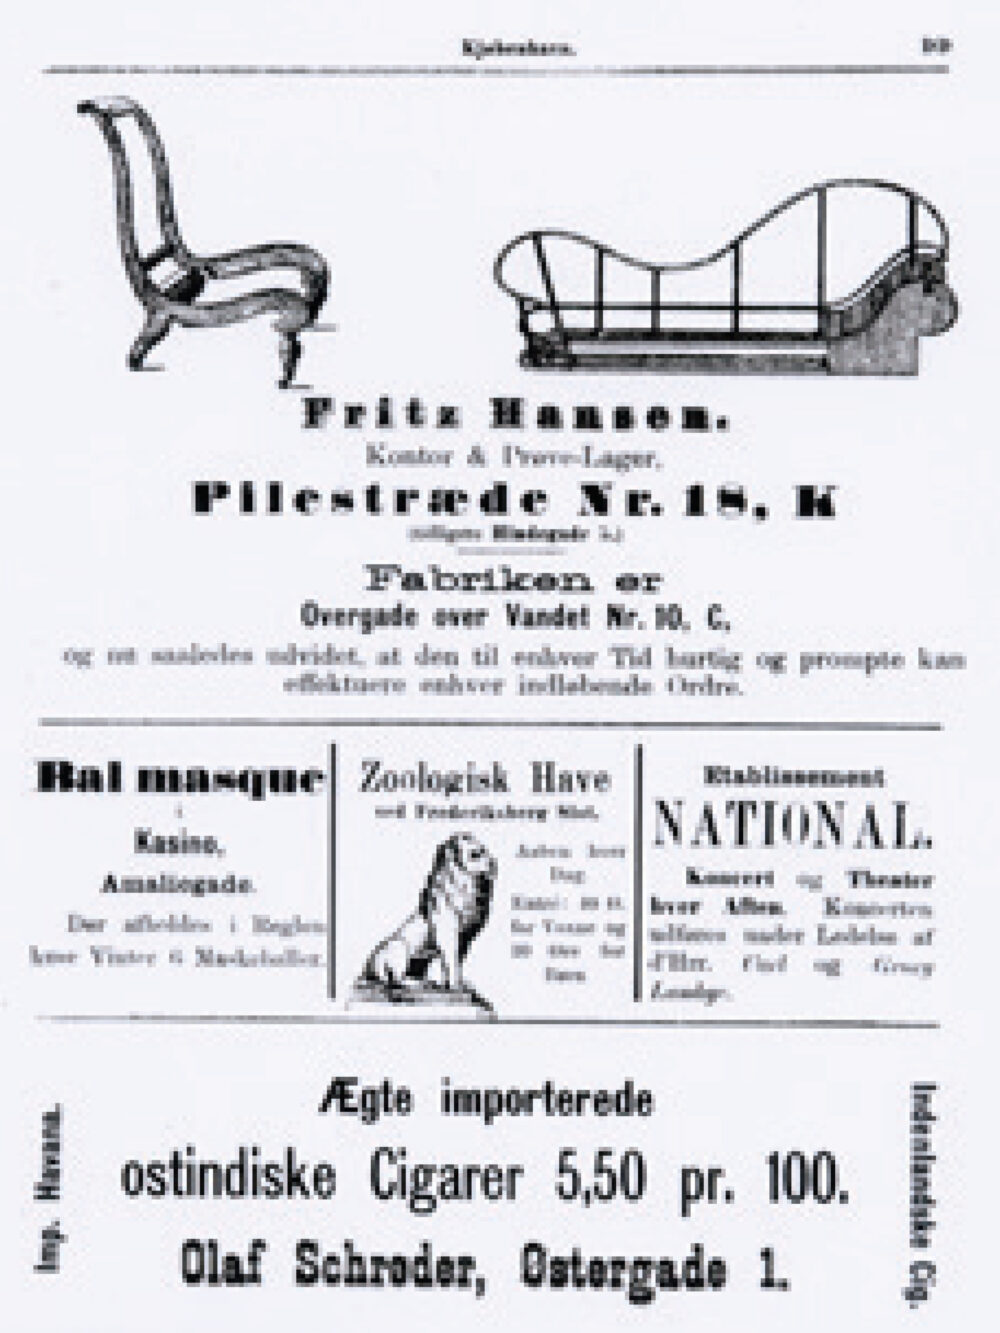 Fritz Hansen Werbung, 1890